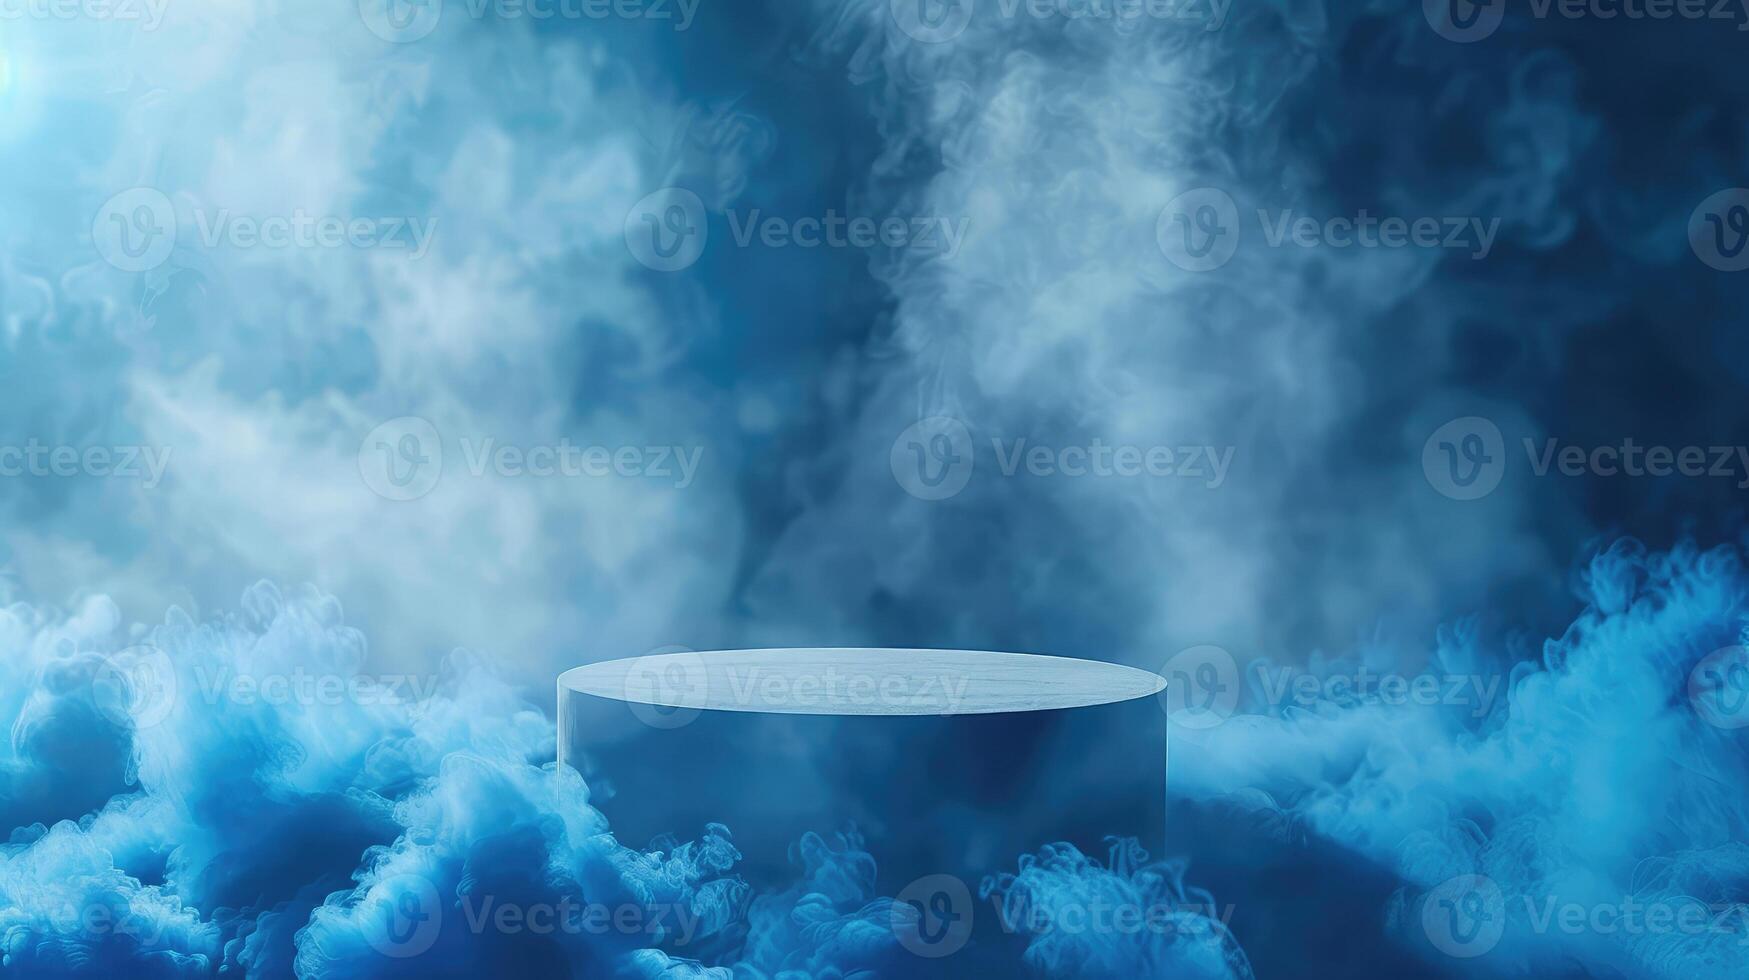 blauw achtergrond met een Product podium omringd door blauw wolken. rook, mist, stoom- achtergrond foto